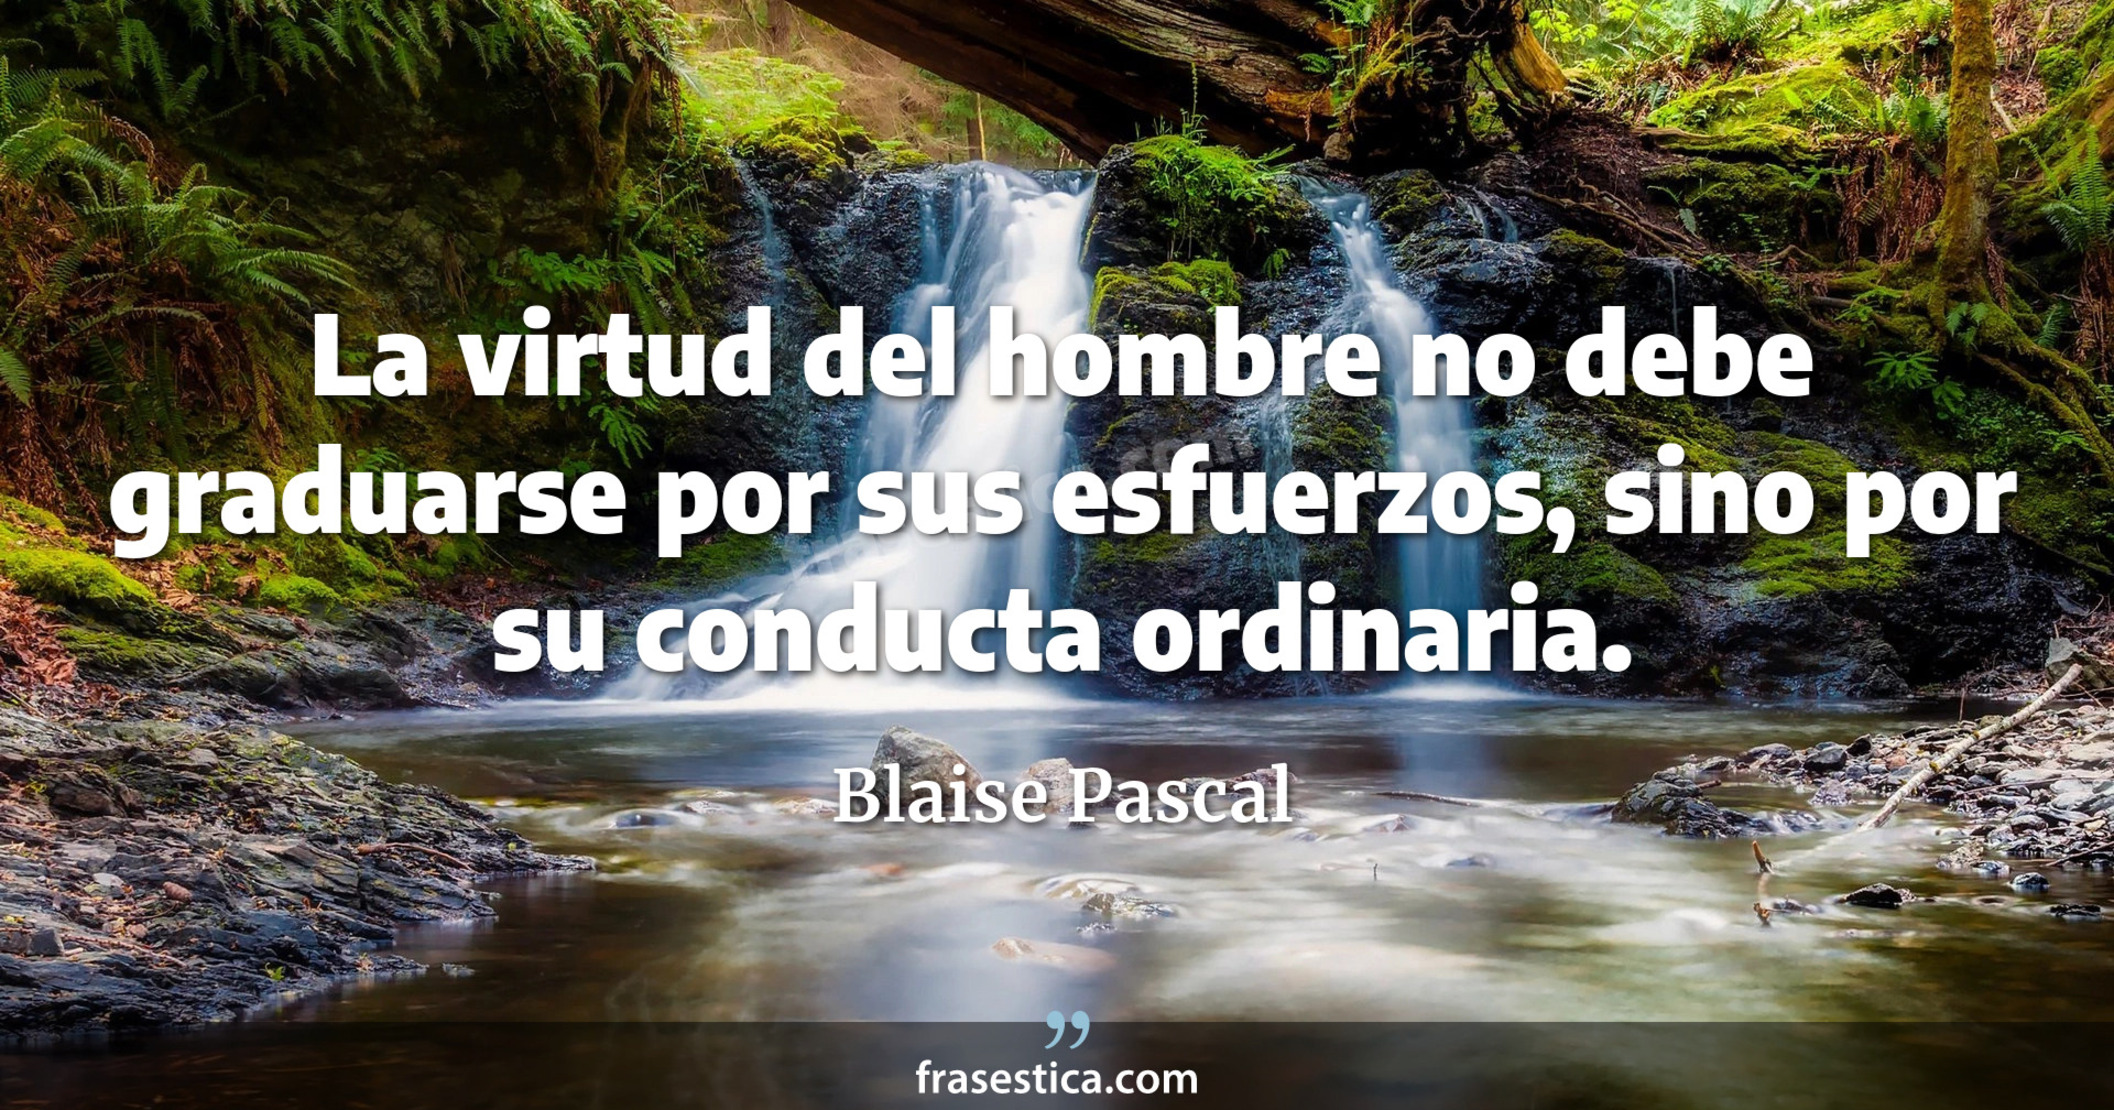 La virtud del hombre no debe graduarse por sus esfuerzos, sino por su conducta ordinaria. - Blaise Pascal